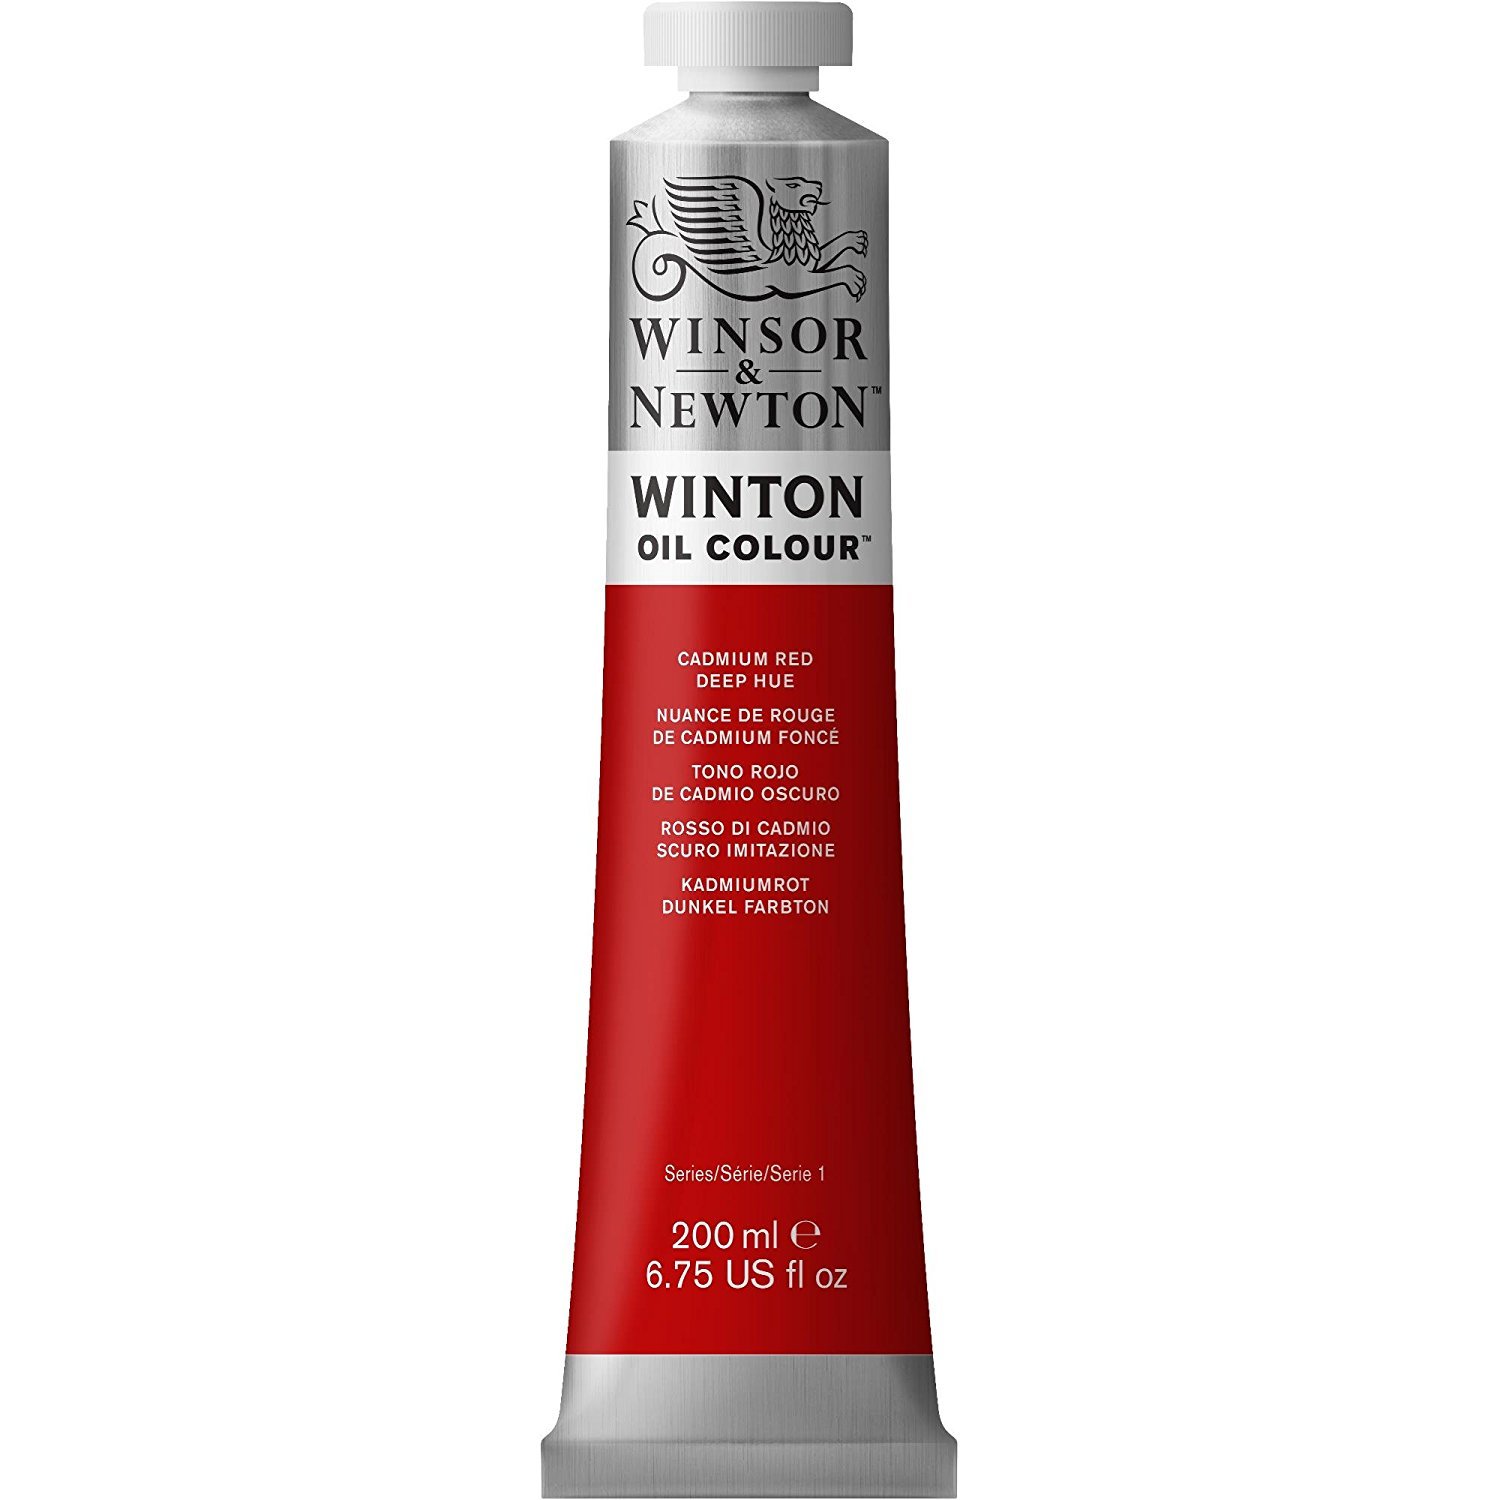 Winsor Newton Winton Yağlı Boya 200ml 098 Cadmium Red Deep Hue (6)